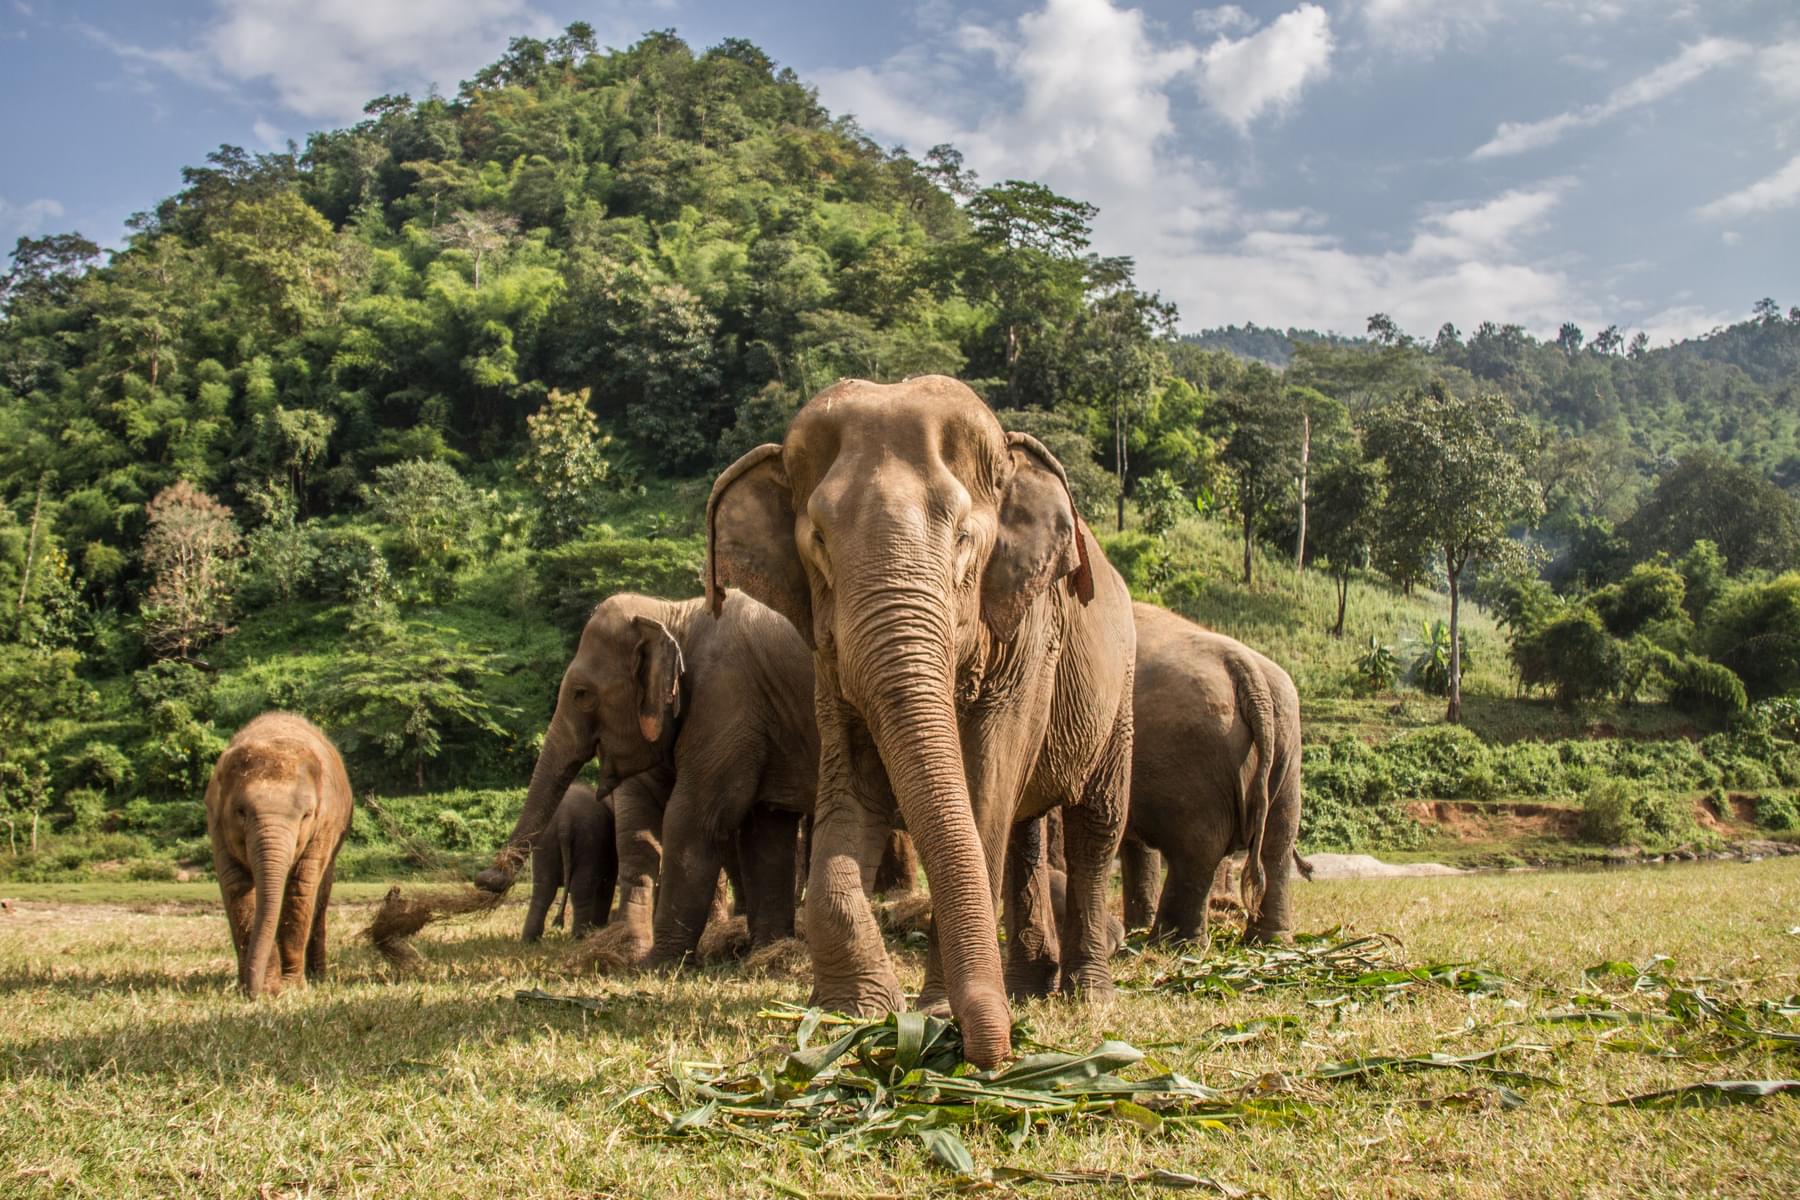 Elephants of Asia